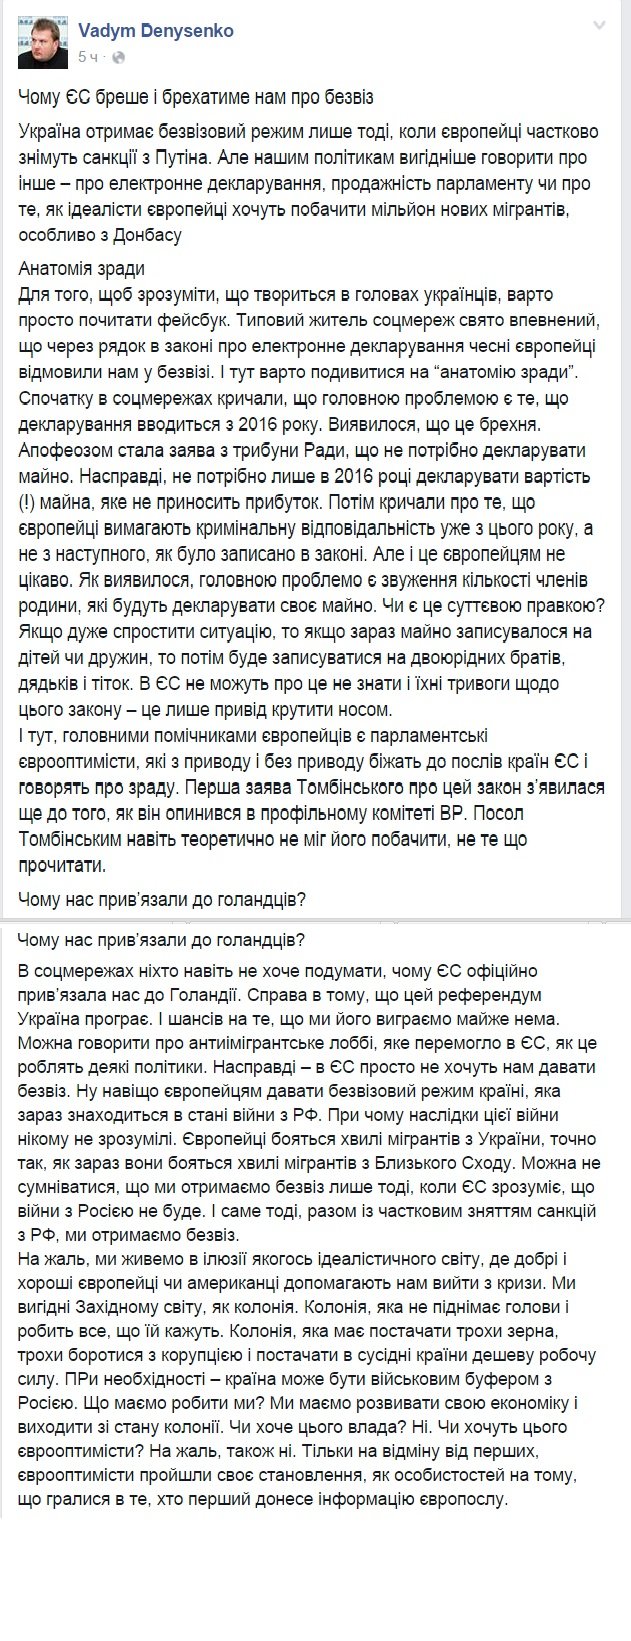 Стон, грызня и шутки: реакция украинских соцсетей на провал безвизового режима